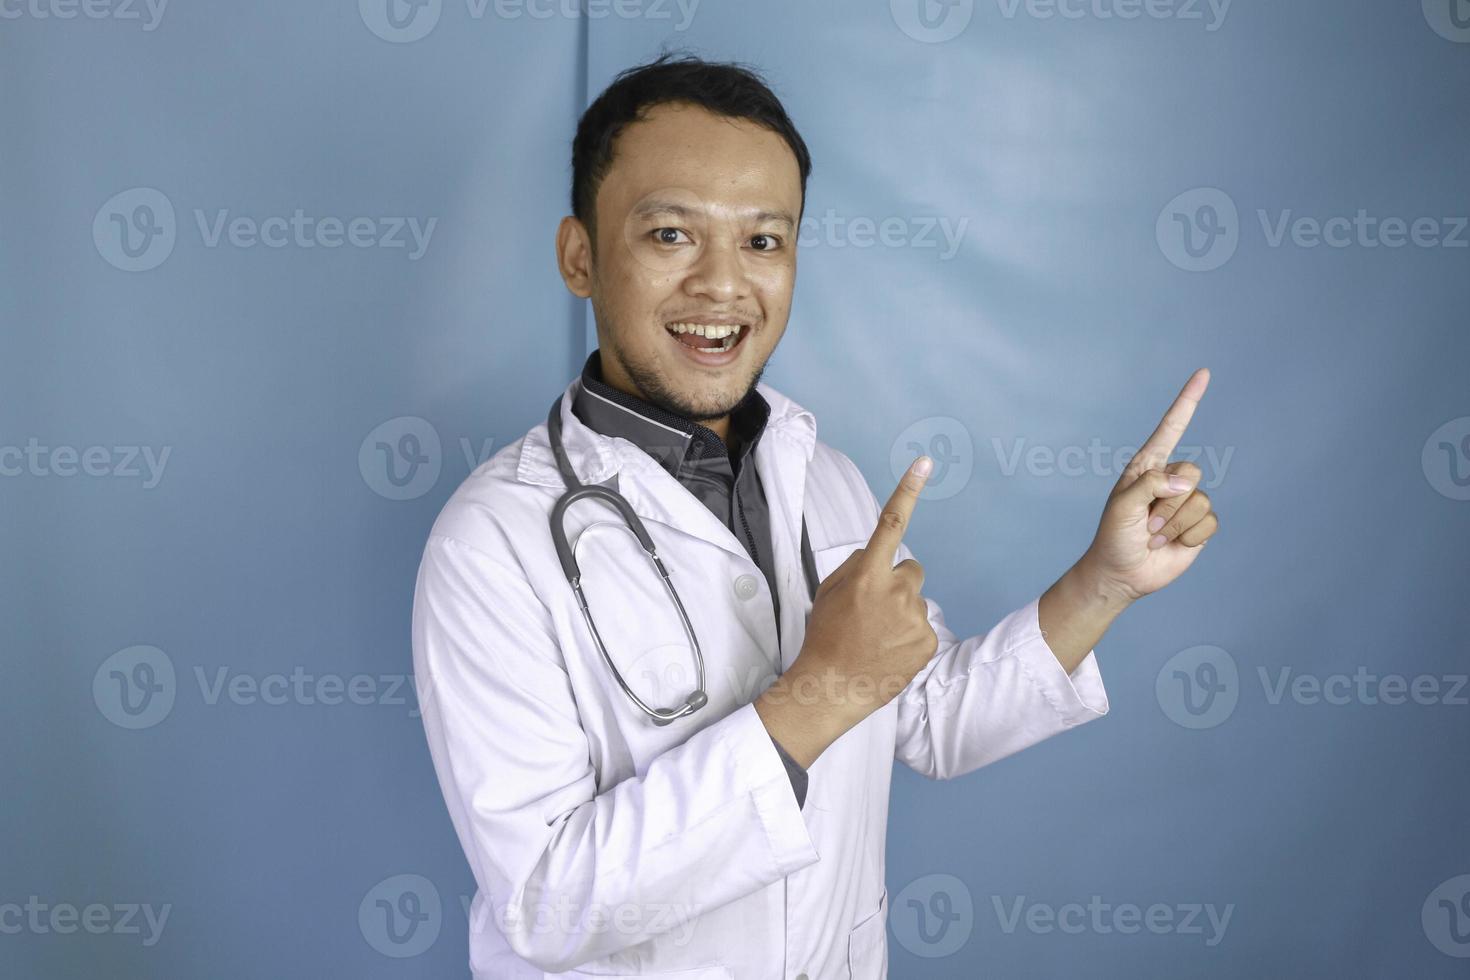 feliz jovem médico asiático, um profissional médico está sorrindo e apontando para cima em um espaço de cópia isolado sobre fundo azul foto